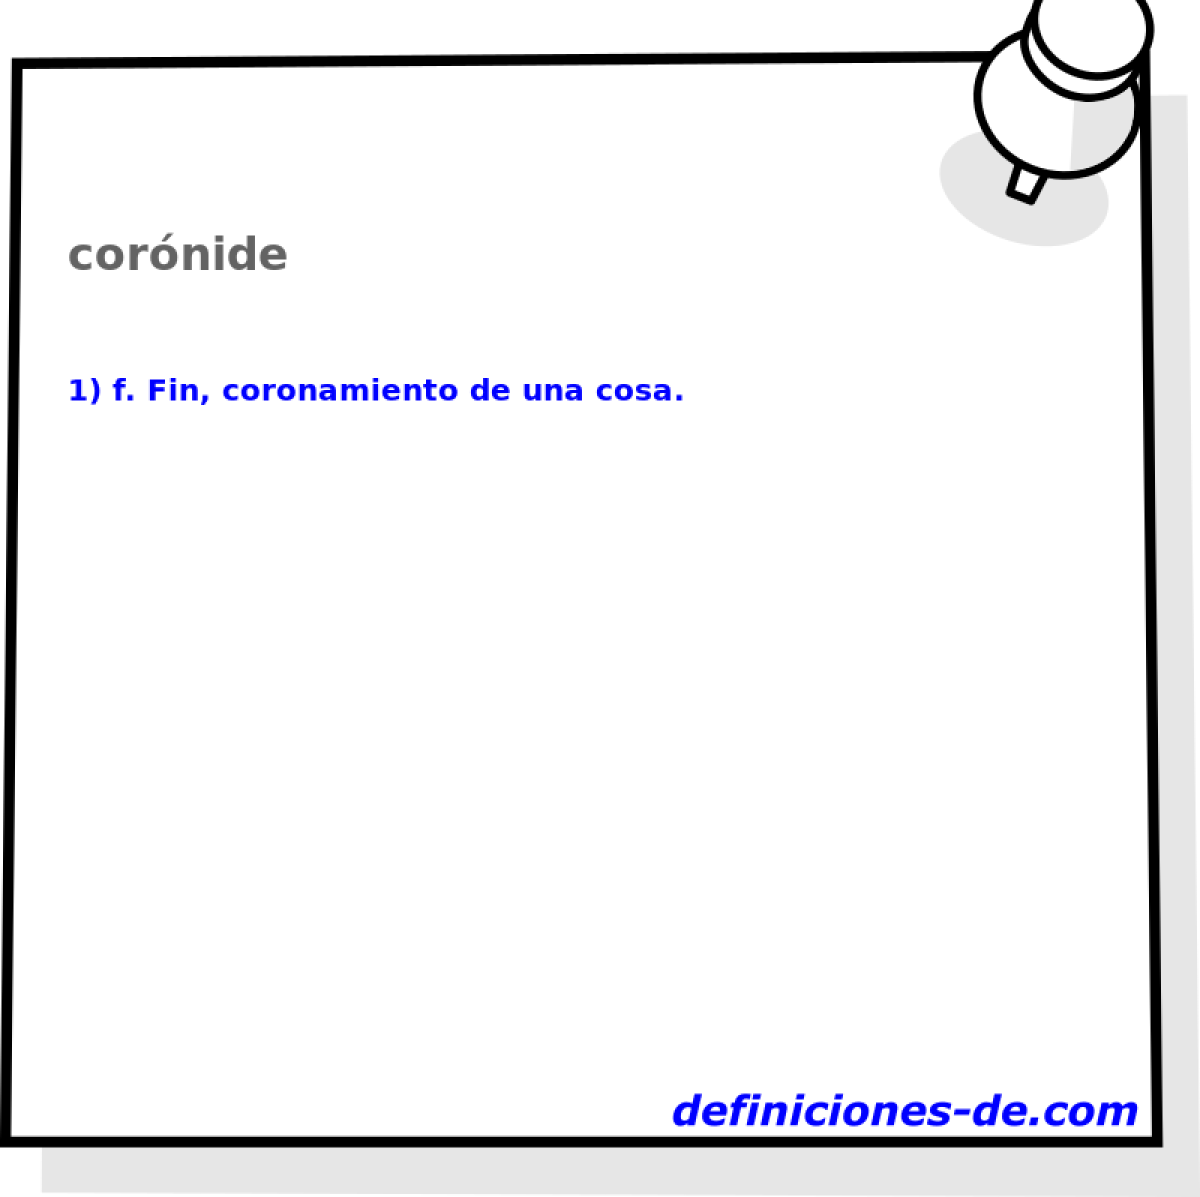 cornide 